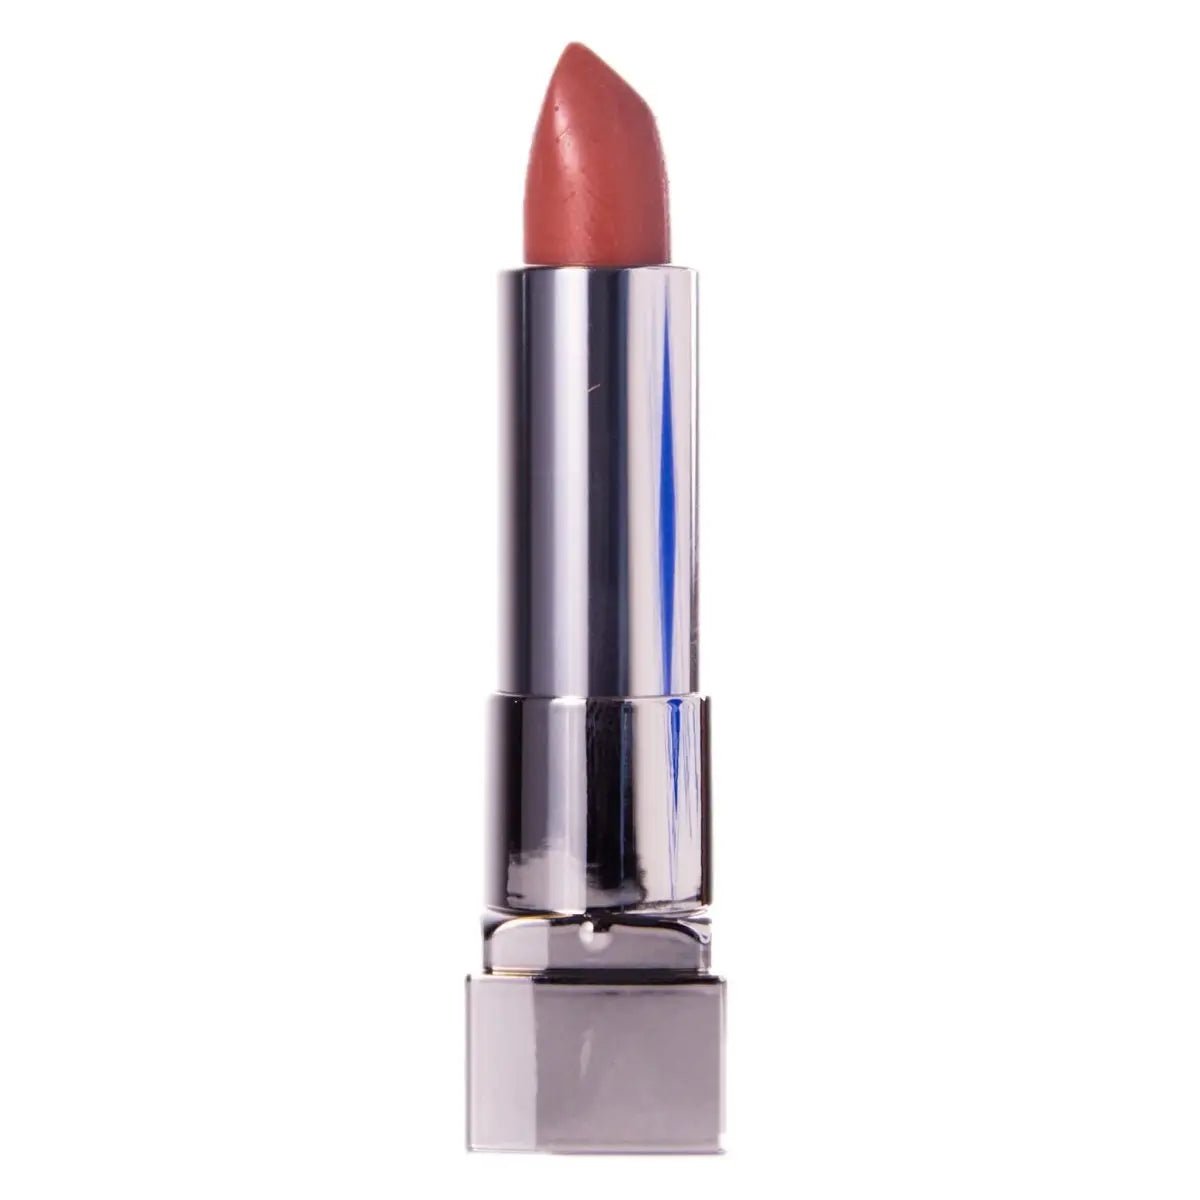 Image of Maybelline Color Sensational Matte Lipstick